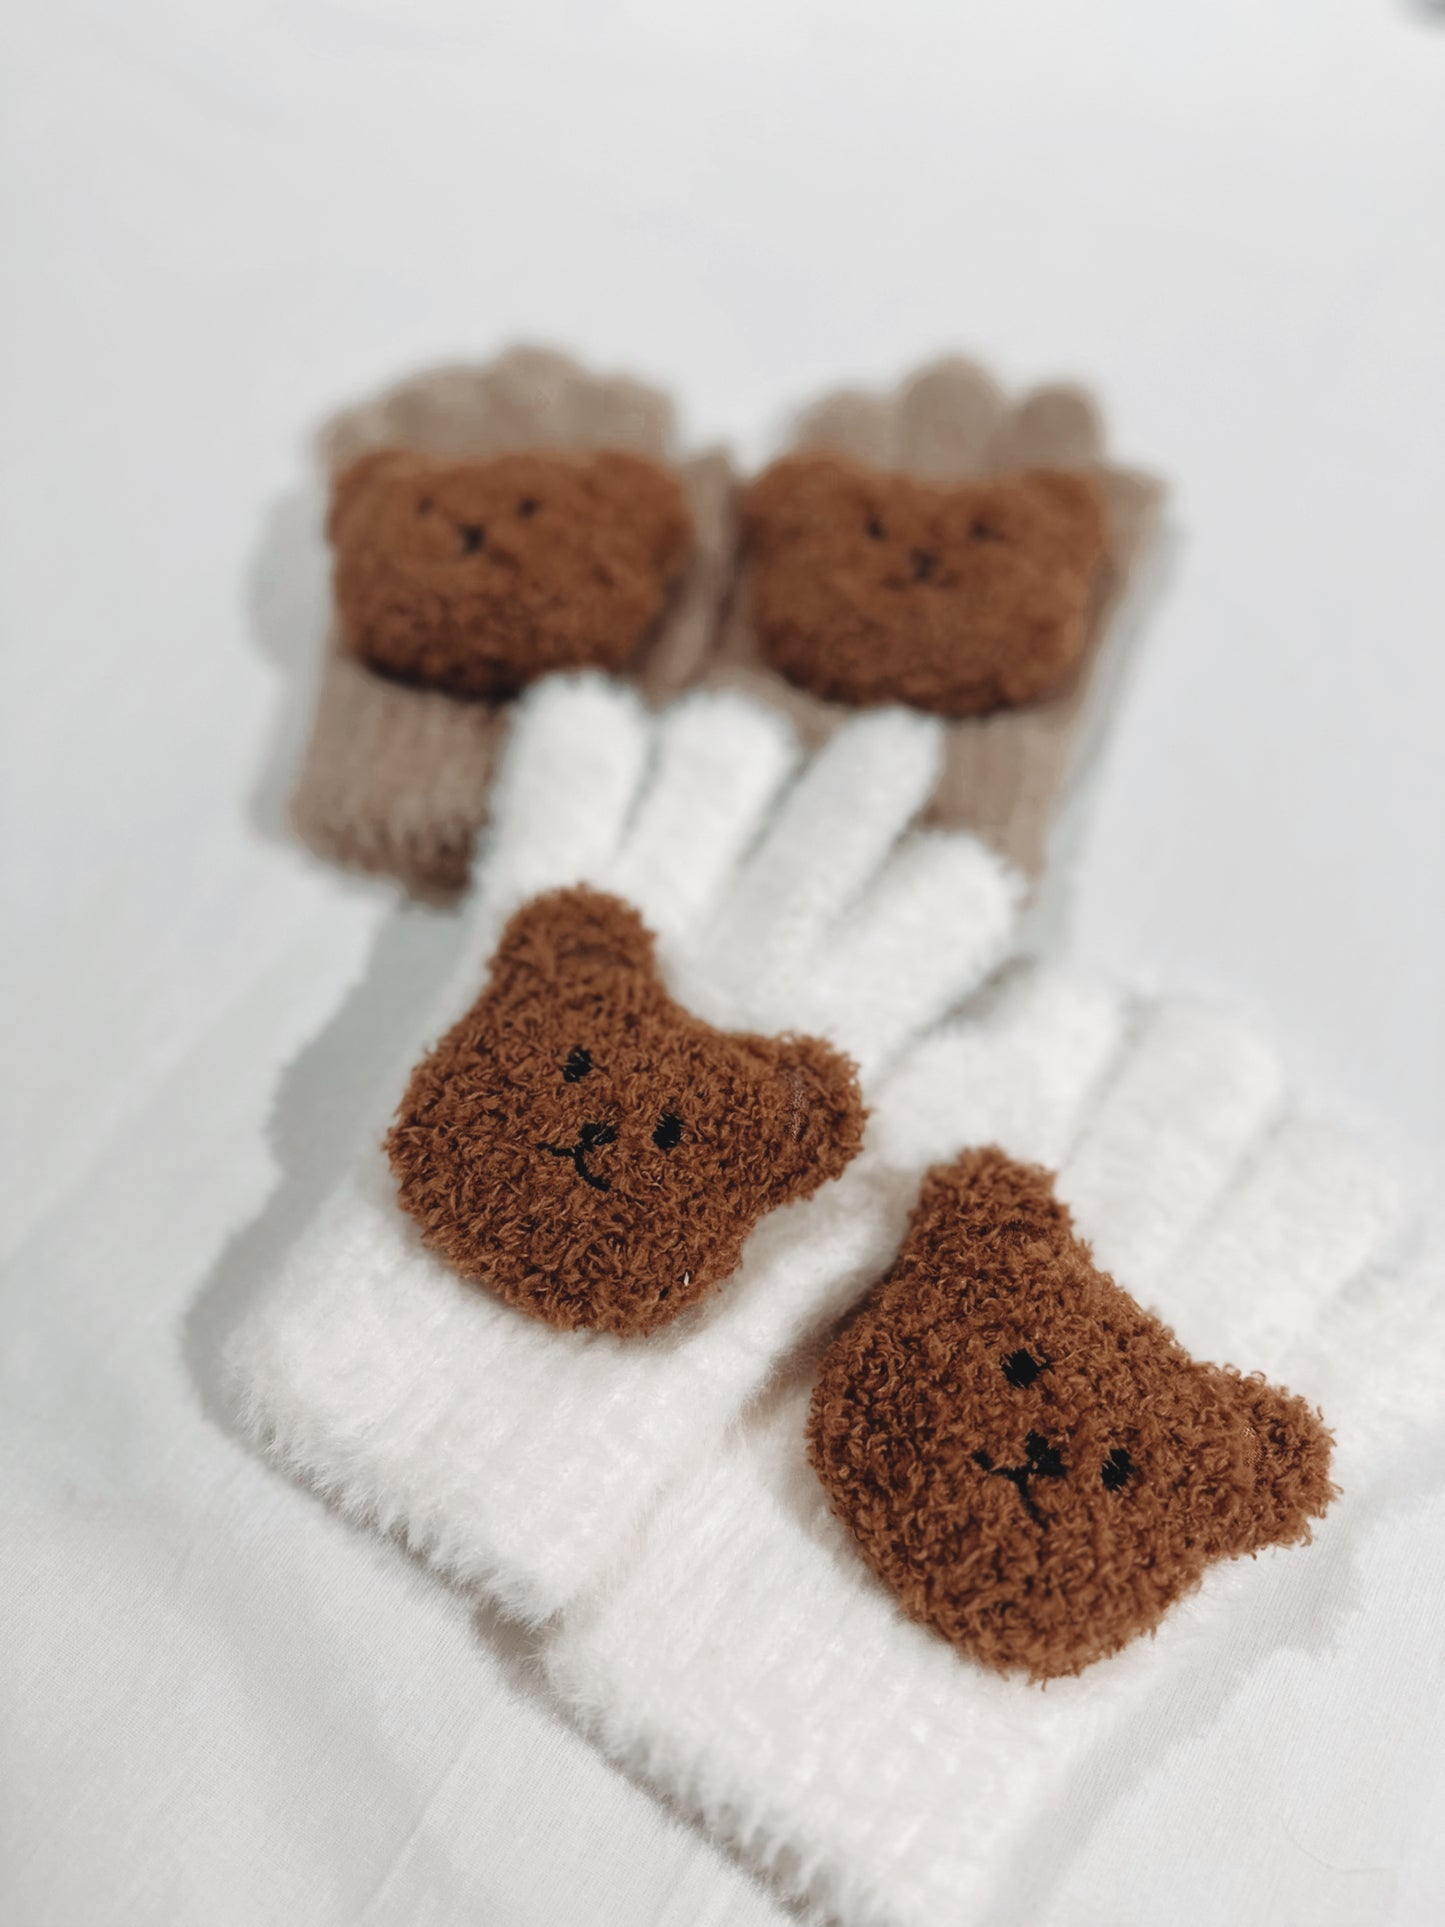 Teddy Bear Gloves